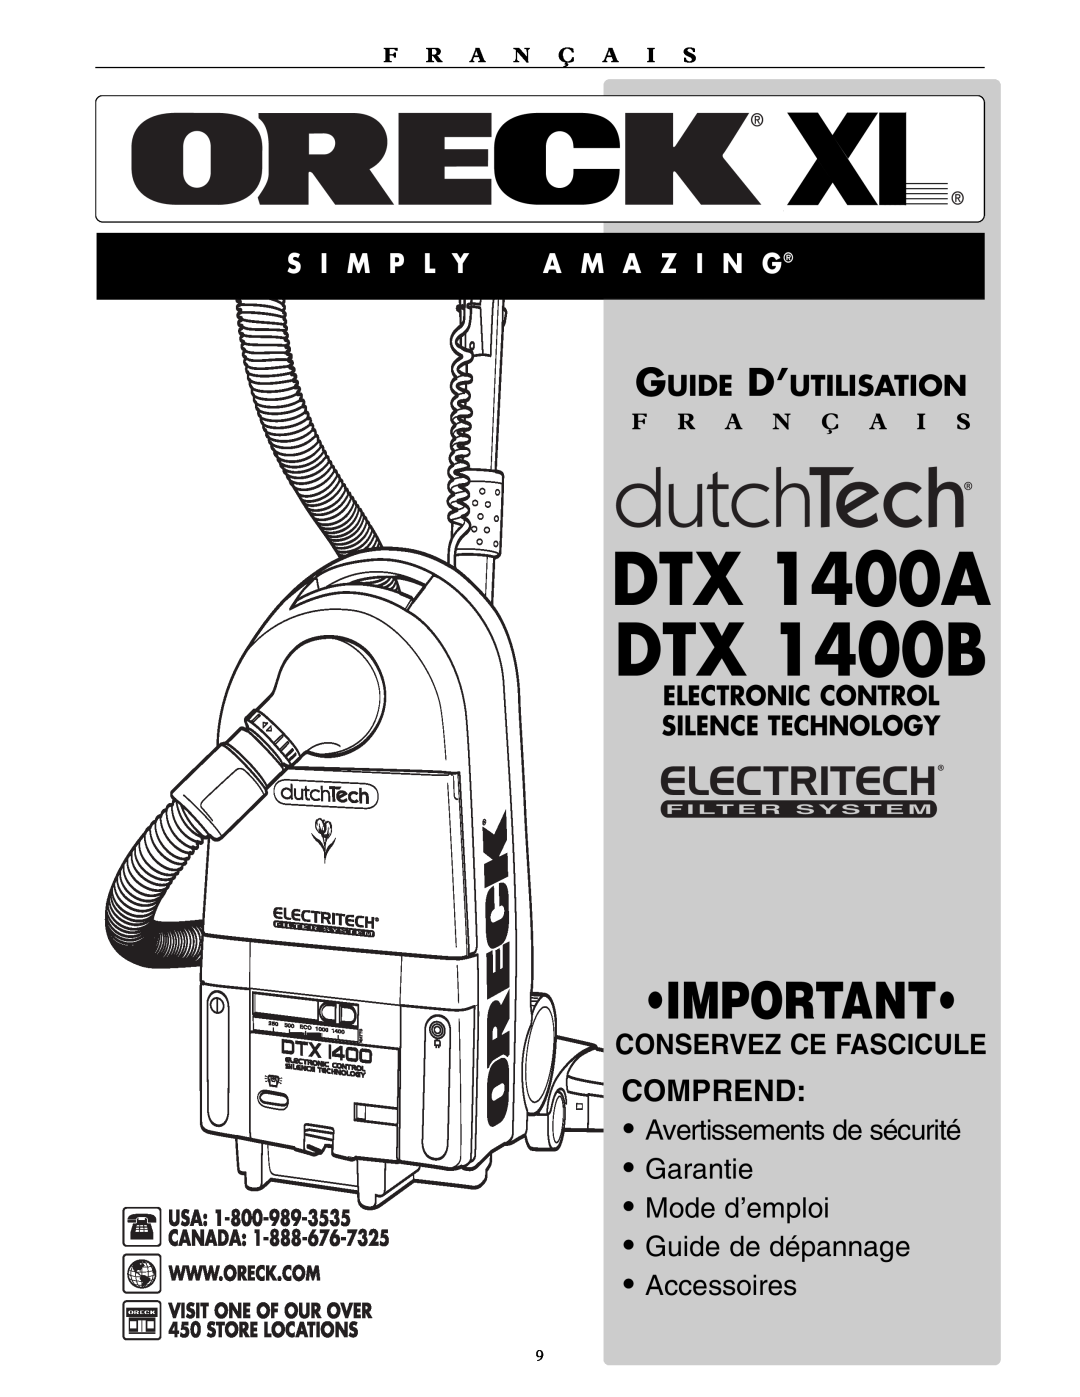 Oreck DTX 1400A Comprend, Avertissements de sécurité Garantie, Mode d’emploi Guide de dépannage, Accessoires, S I M P L Y 